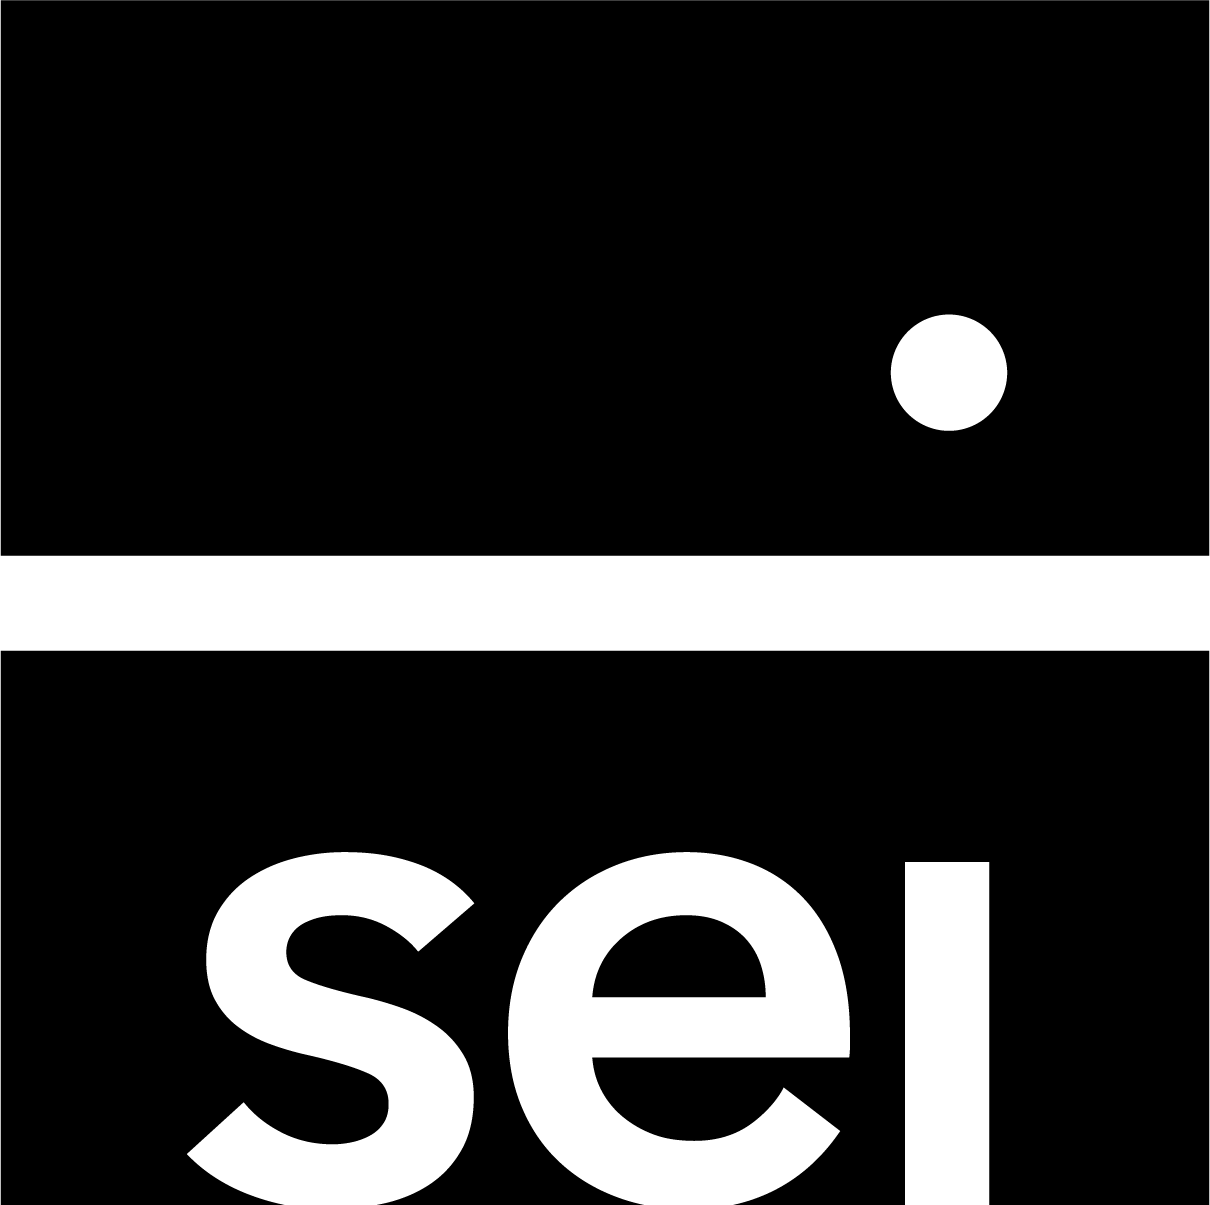 GUardian Capital Logo